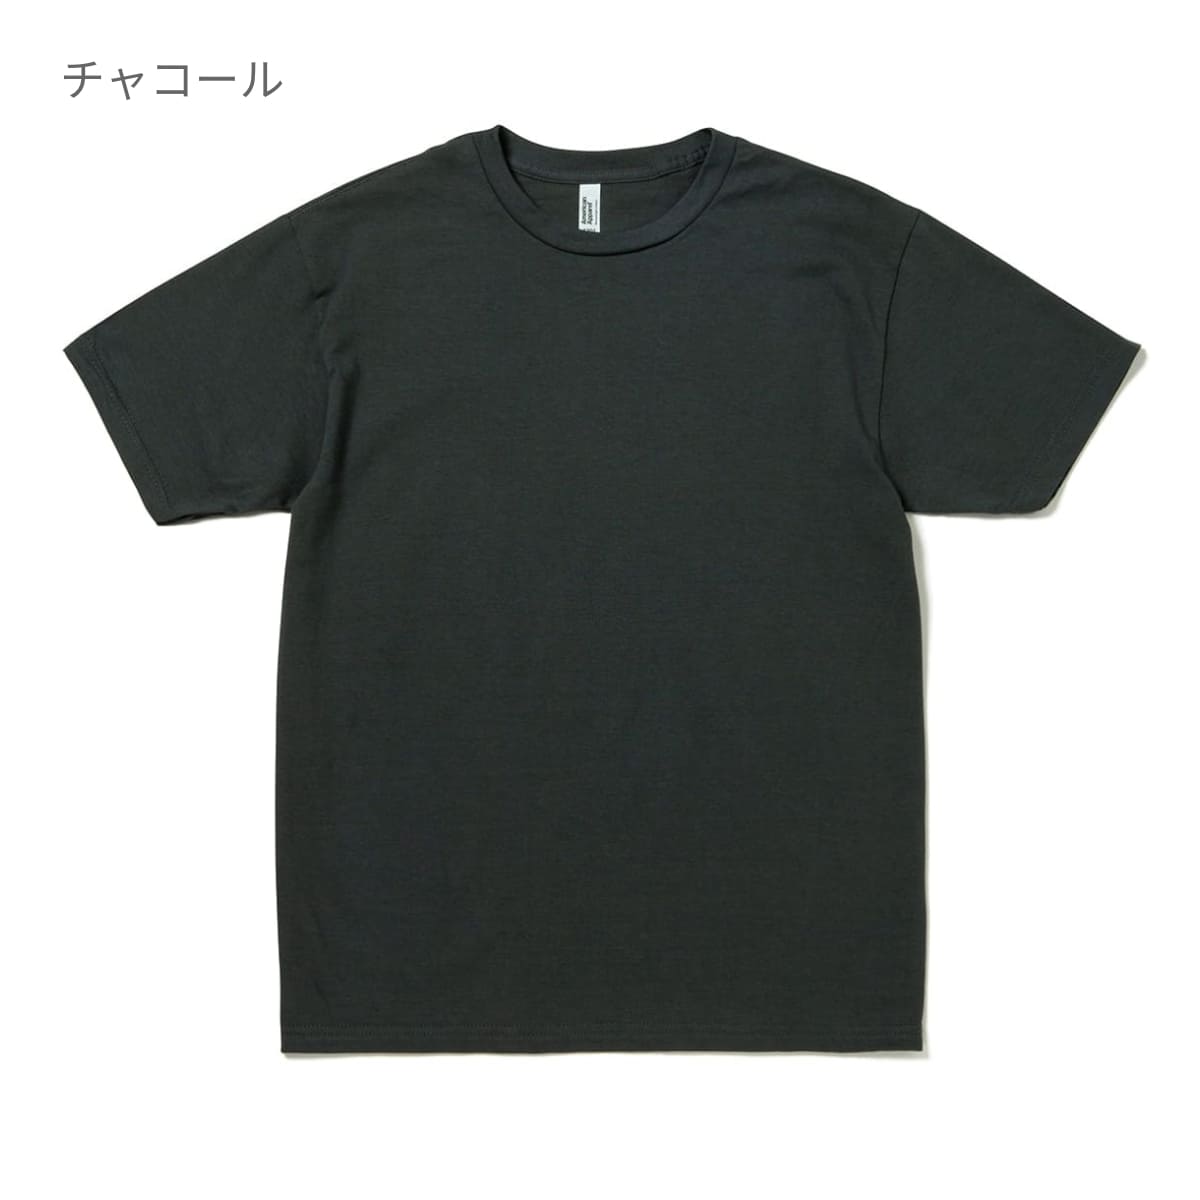 カラーブラックコンフォート 黒 L 0Tシャツ 半袖 ブラック